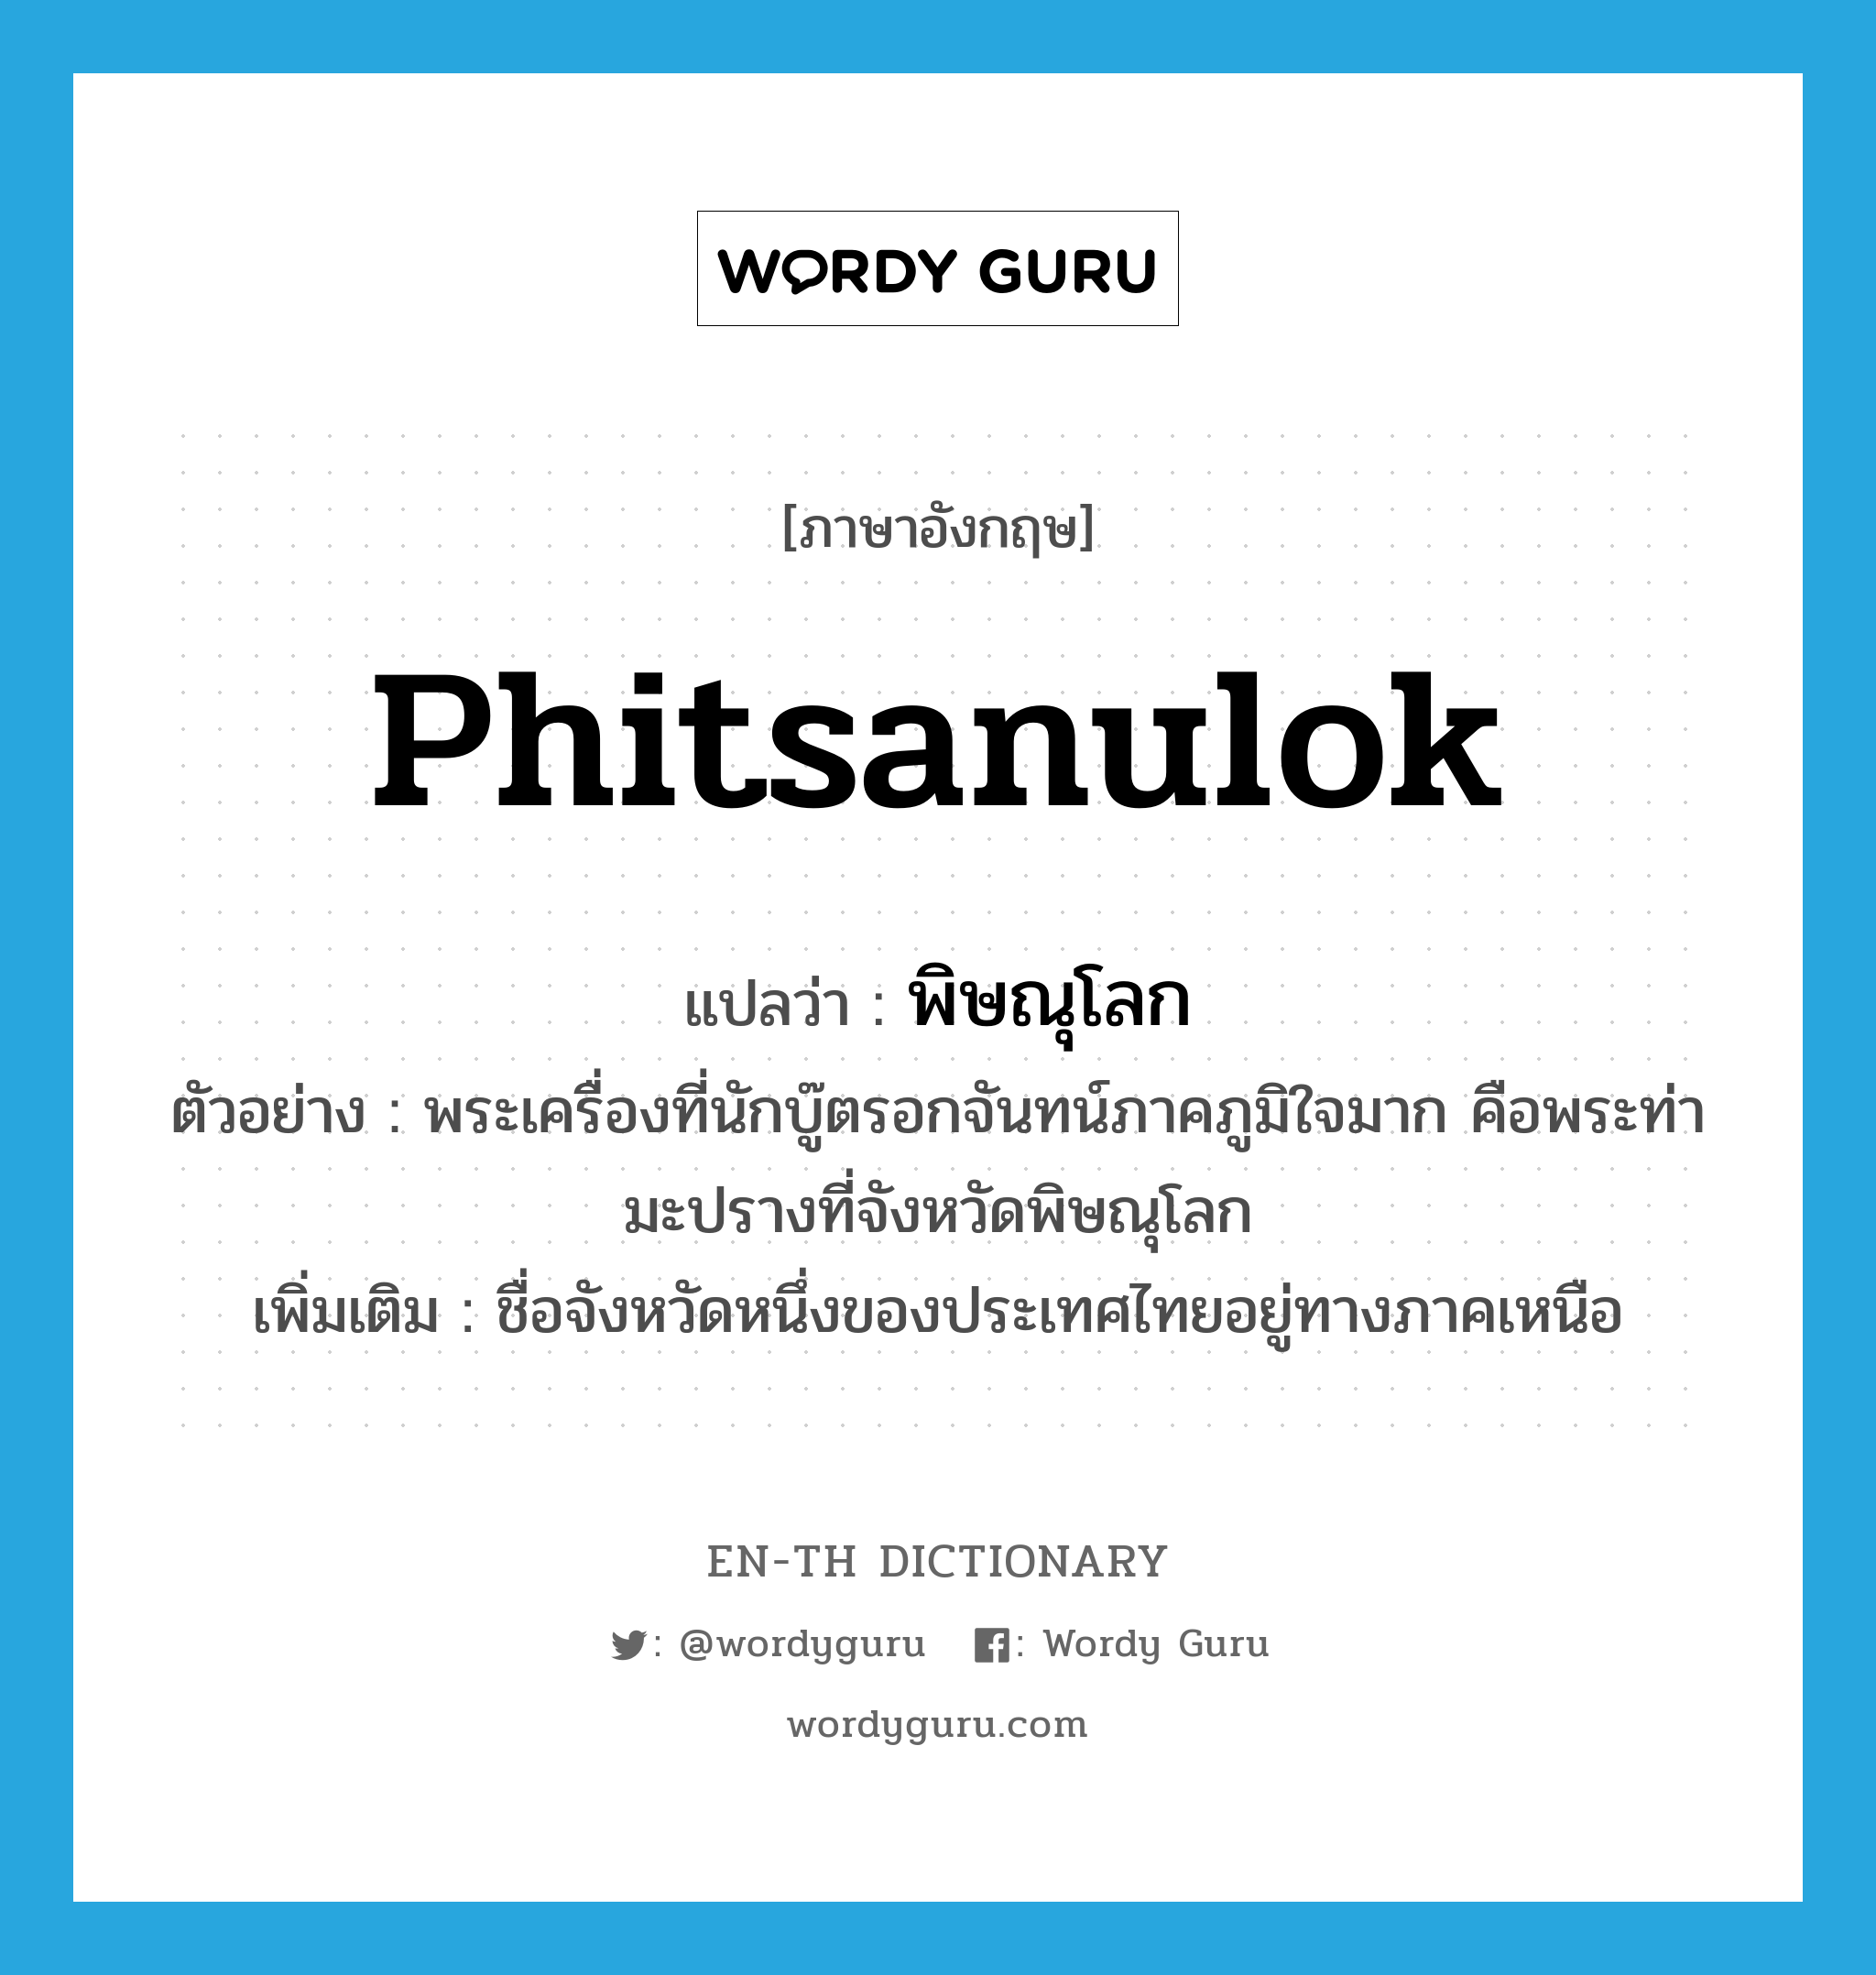 Phitsanulok แปลว่า?, คำศัพท์ภาษาอังกฤษ Phitsanulok แปลว่า พิษณุโลก ประเภท N ตัวอย่าง พระเครื่องที่นักบู๊ตรอกจันทน์ภาคภูมิใจมาก คือพระท่ามะปรางที่จังหวัดพิษณุโลก เพิ่มเติม ชื่อจังหวัดหนึ่งของประเทศไทยอยู่ทางภาคเหนือ หมวด N